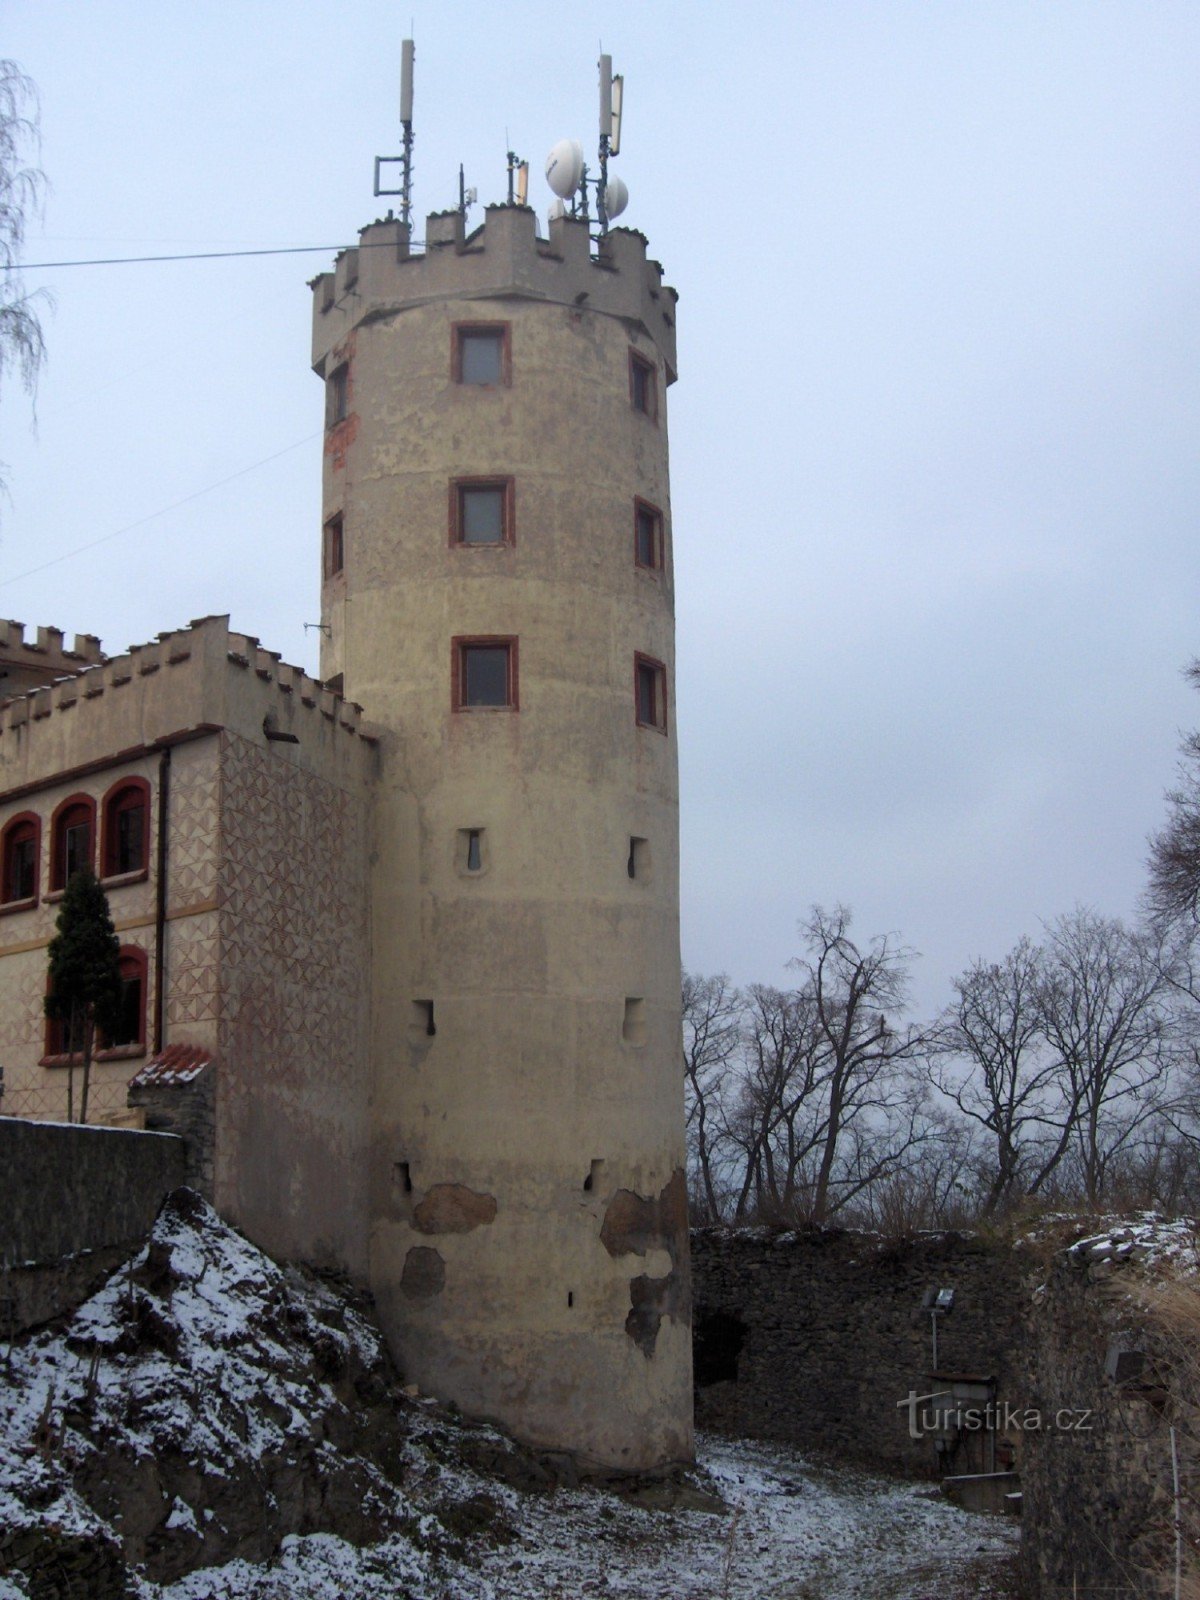 Doubravka uitkijktoren